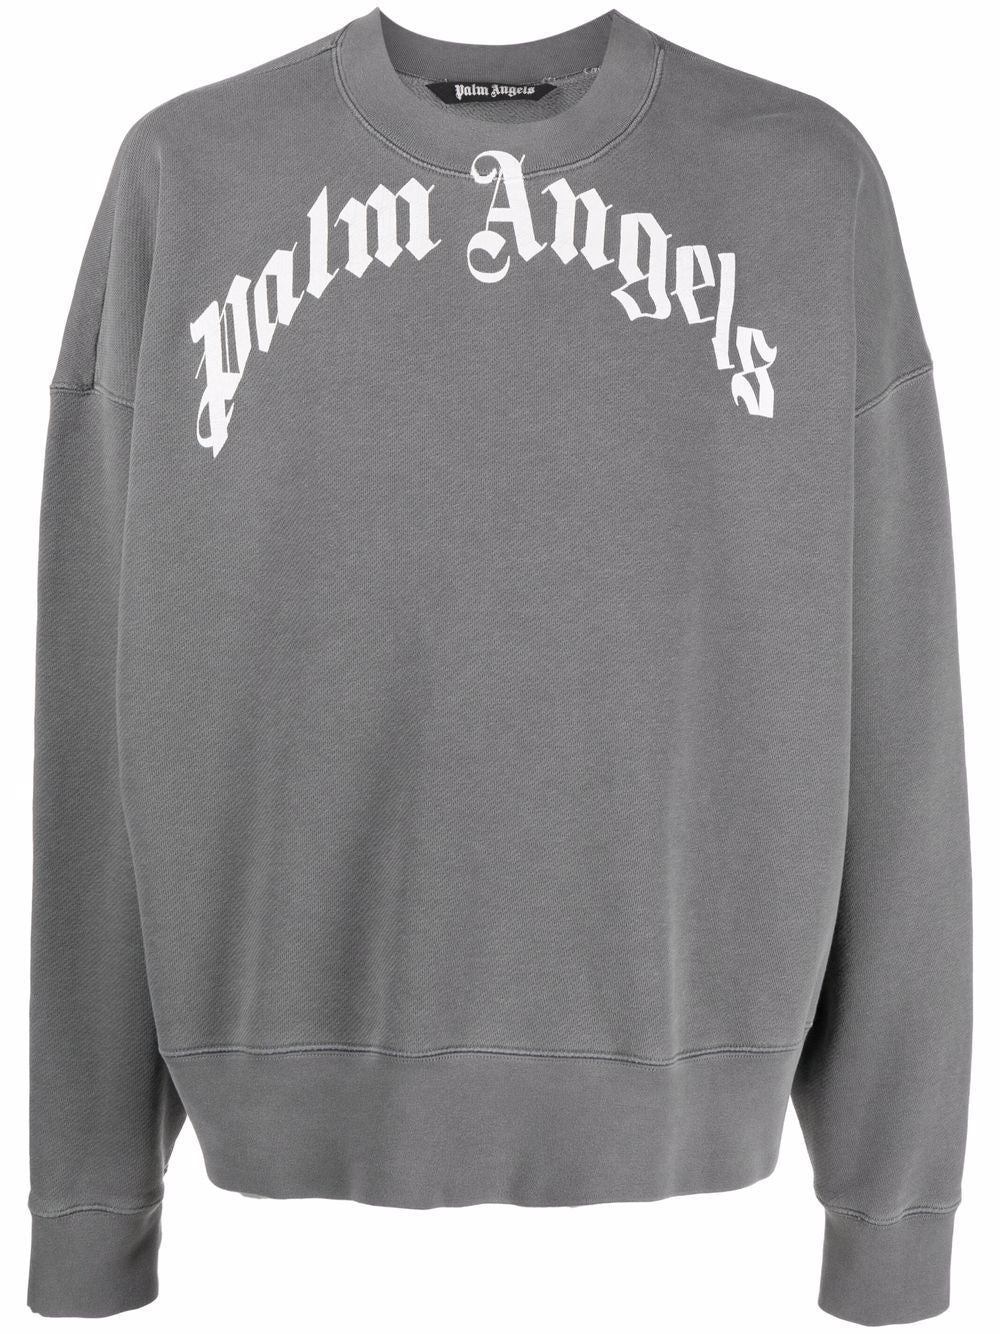 PALM ANGELS Curved Logo Sweatshirt | Grey